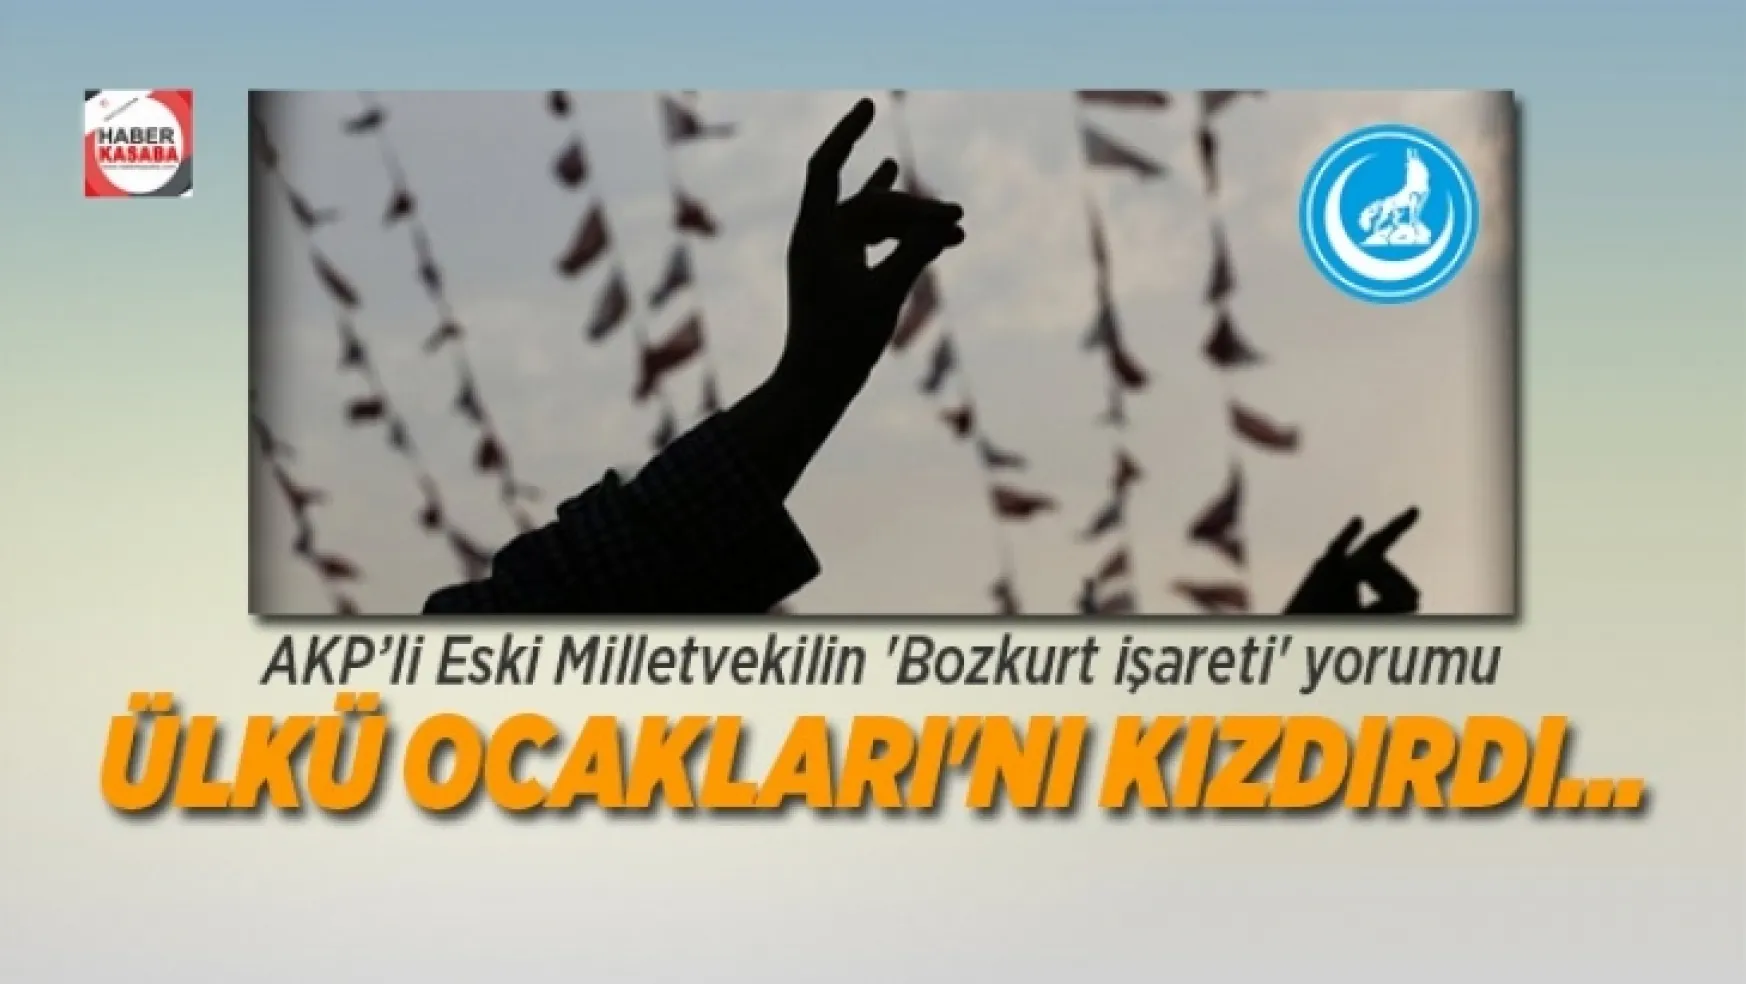 AK Parti'li Eski Milletvekilin 'Bozkurt işareti' yorumuna Ülkü Ocaklarından tepki geldi